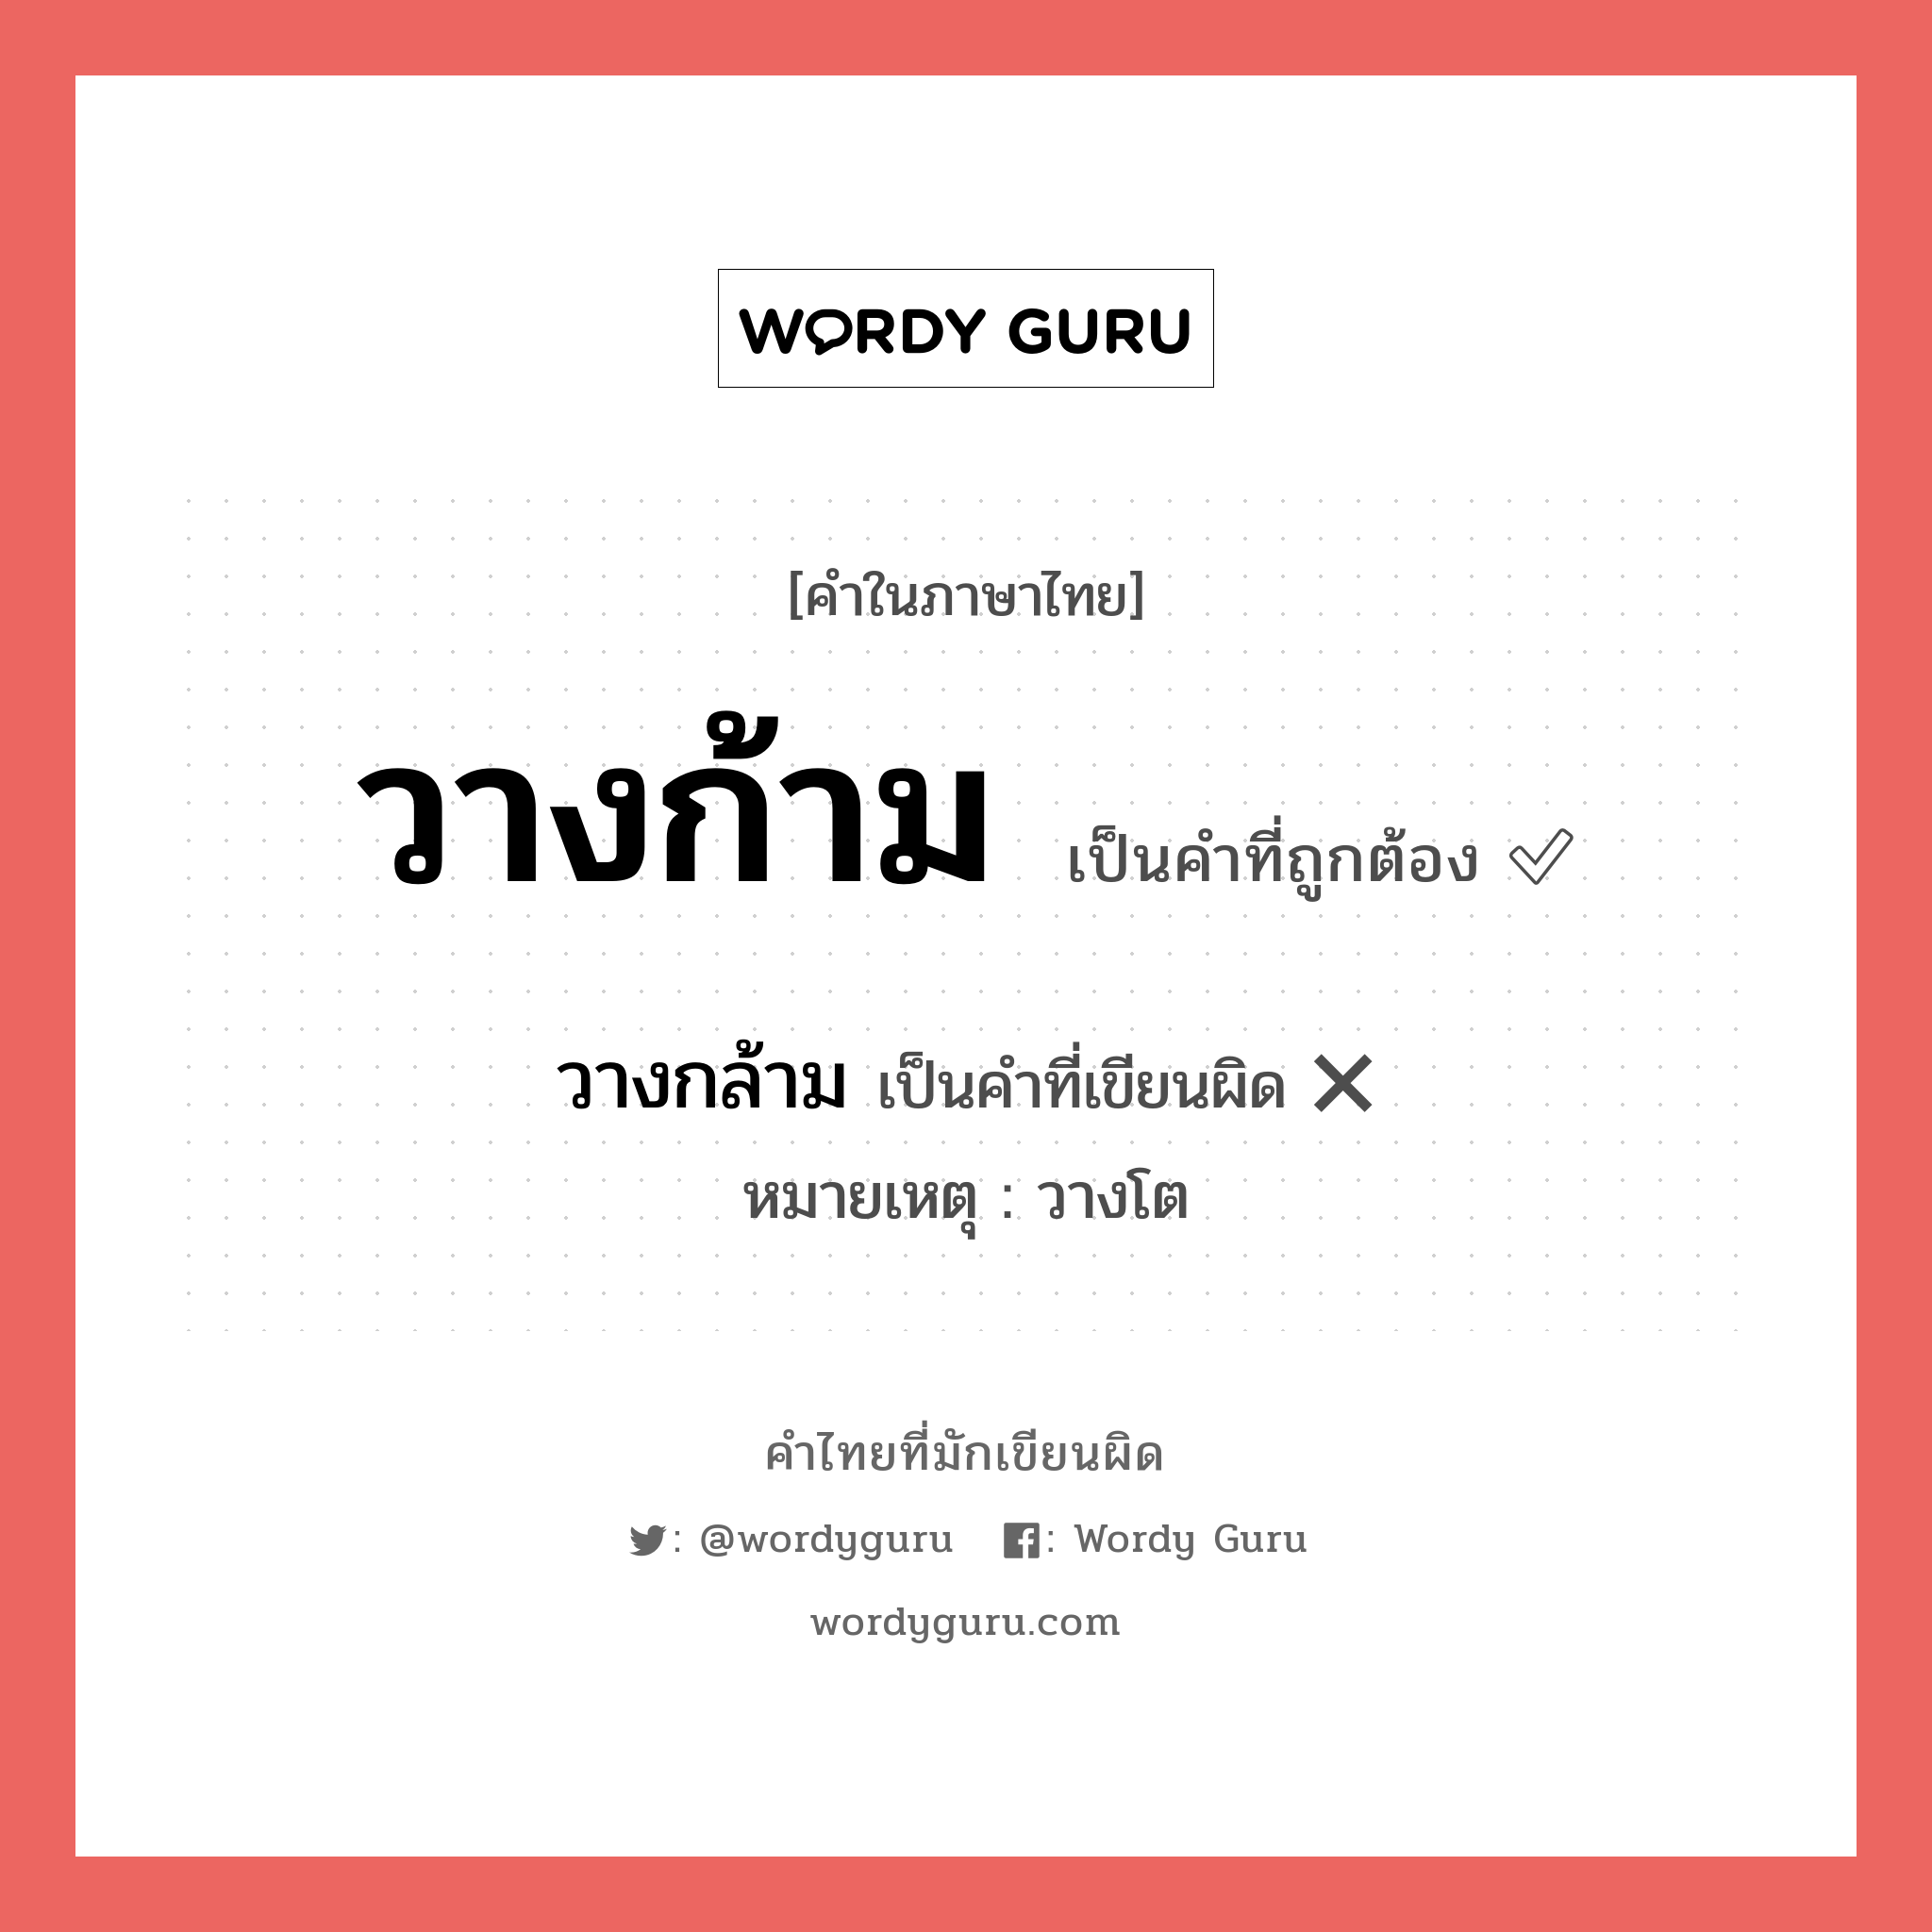 วางก้าม หรือ วางกล้าม เขียนยังไง? คำไหนเขียนถูก?, คำในภาษาไทยที่มักเขียนผิด วางก้าม คำที่ผิด ❌ วางกล้าม หมายเหตุ วางโต